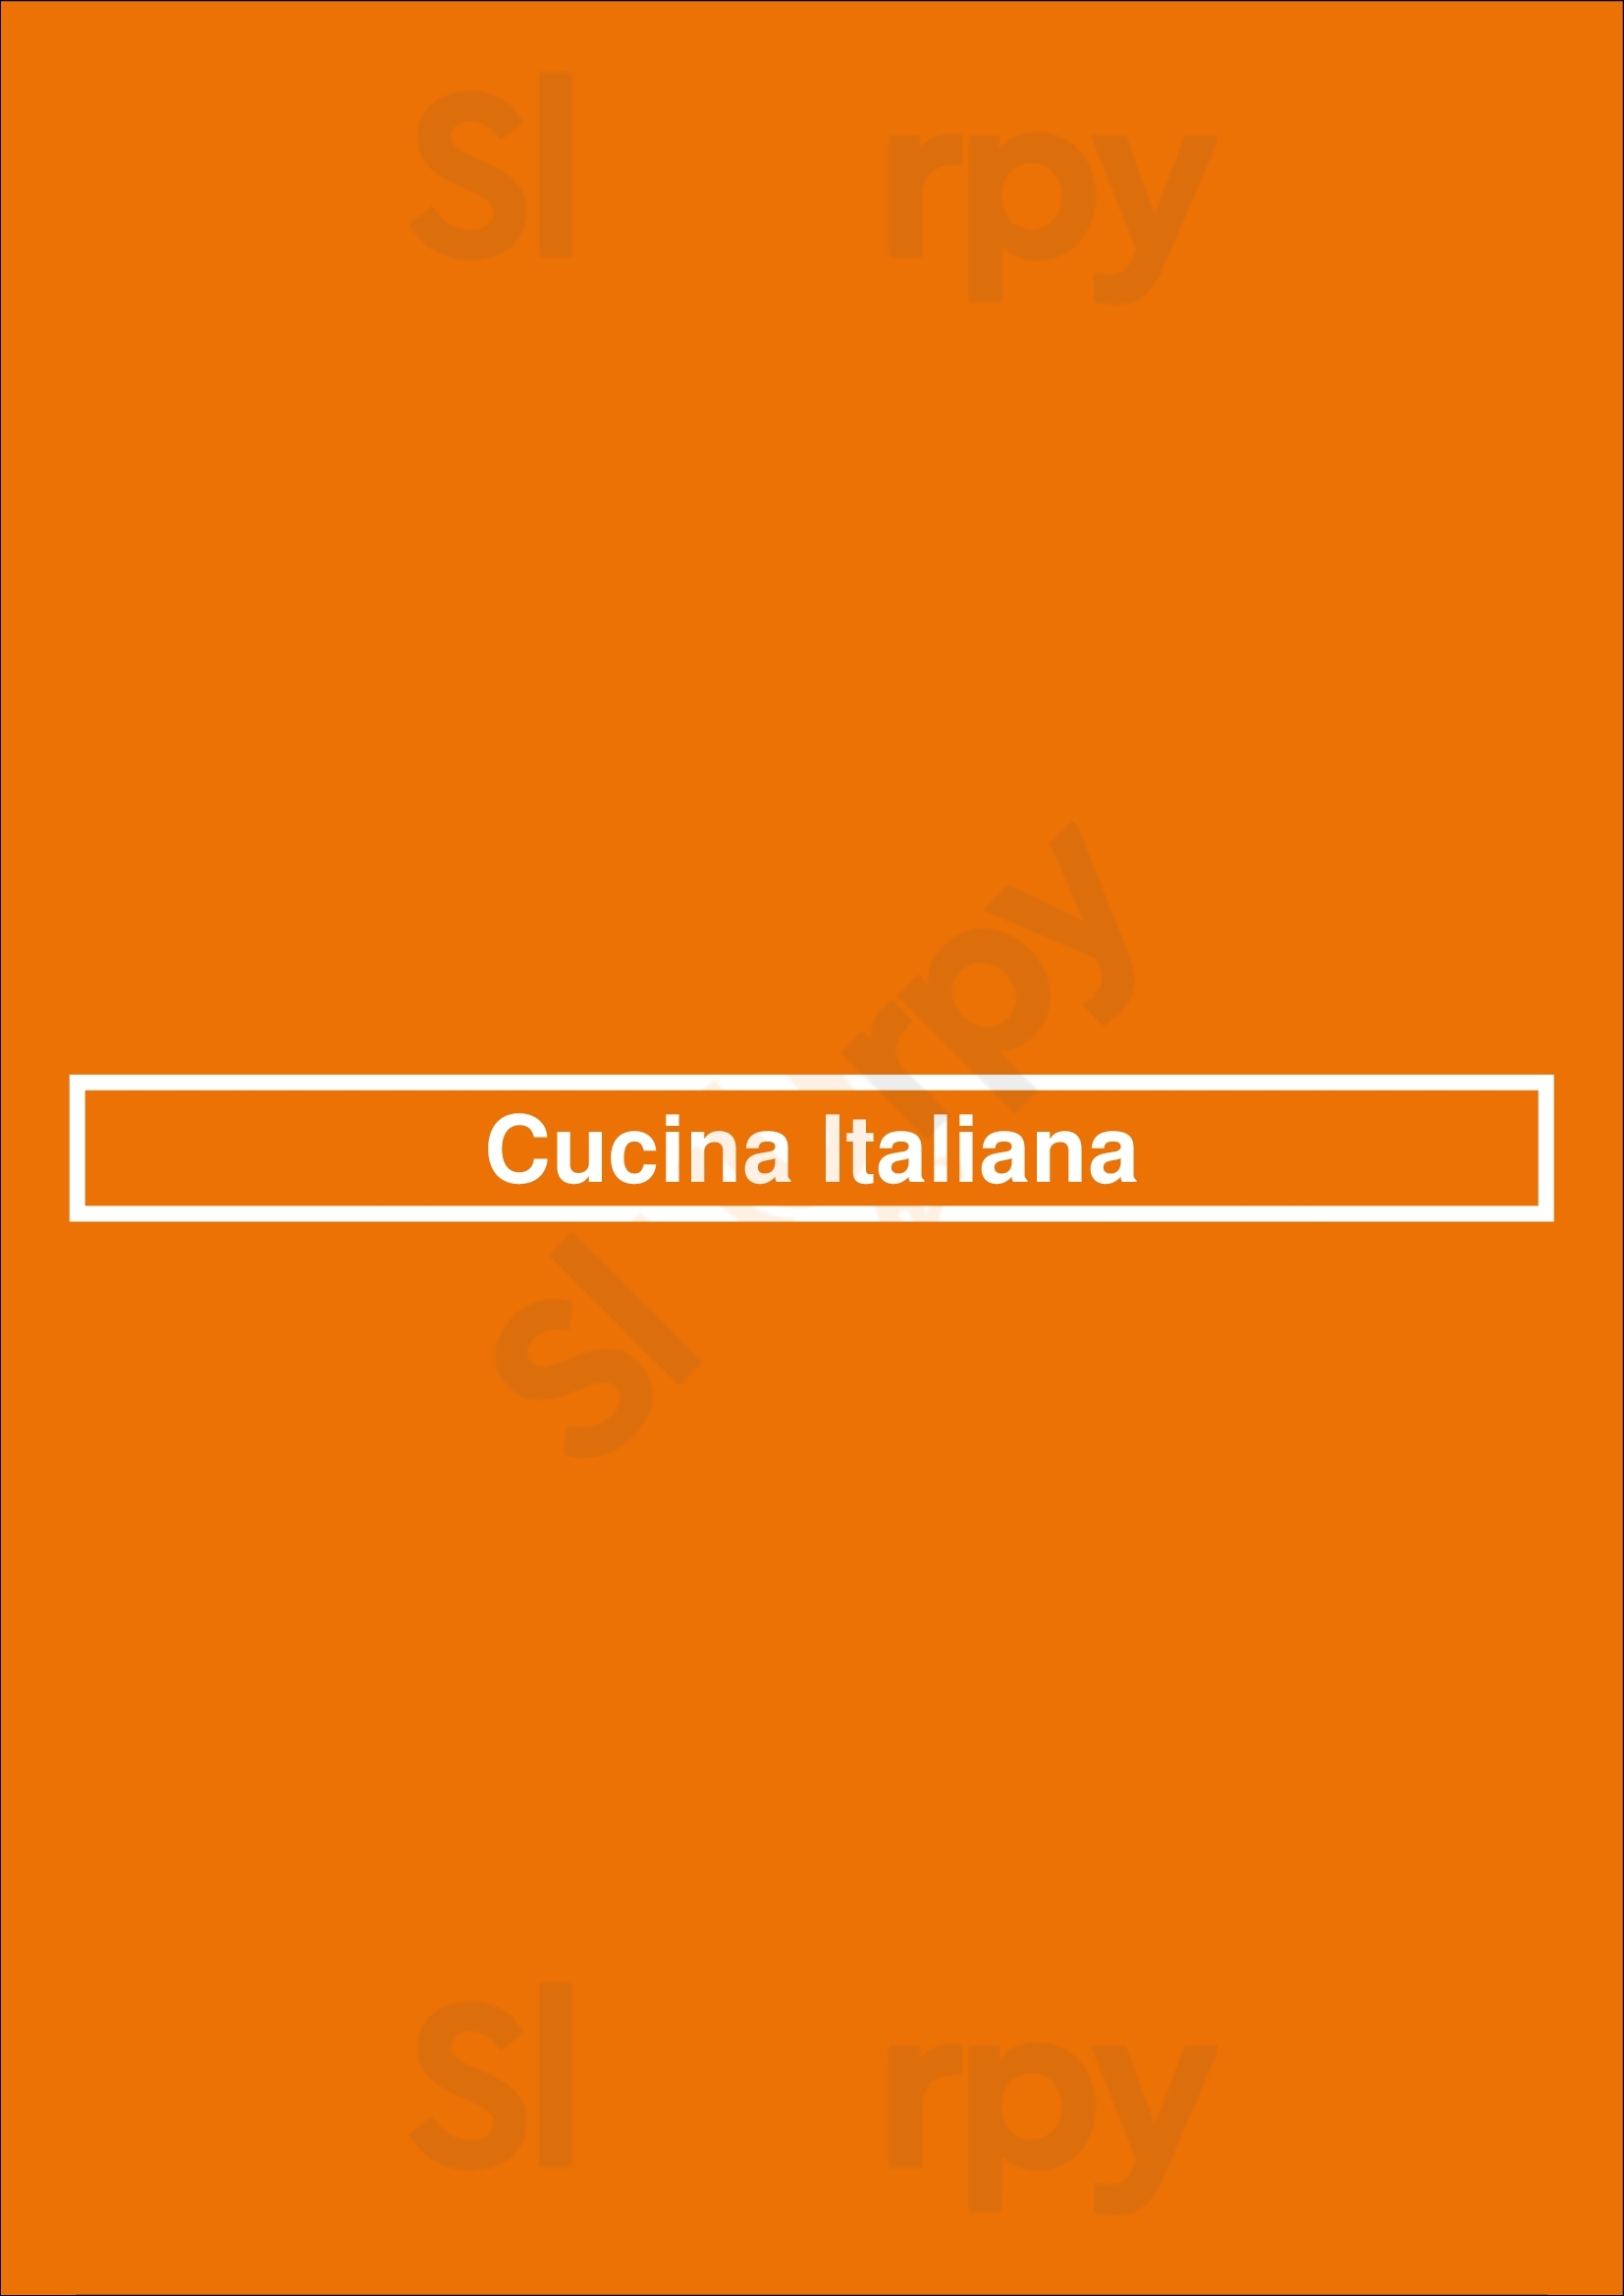 Cucina Italiana London Menu - 1